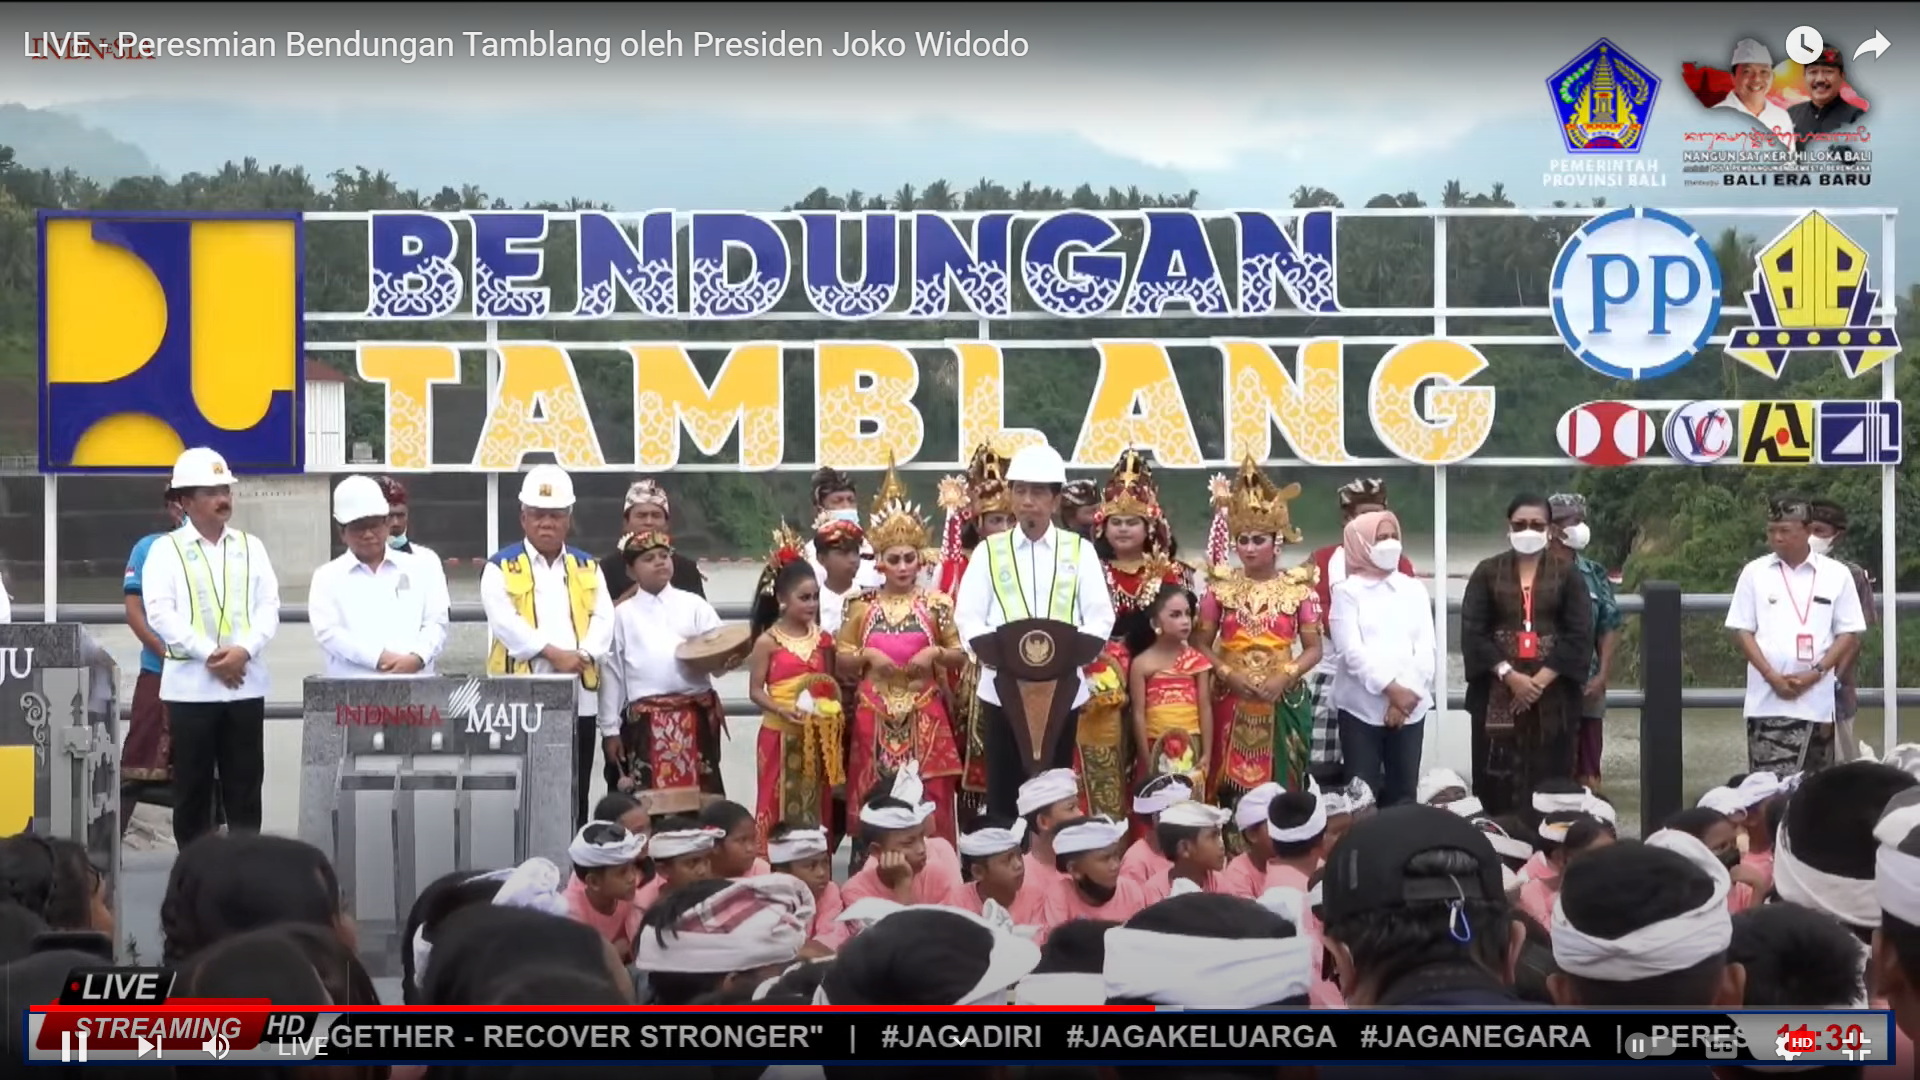 Presiden Jokowi Didampingi Kabinet Indonesia Maju dan Gubernur Bali Resmikan Bendungan Tamblang / Bendungan Danu Kerthi Buleleng